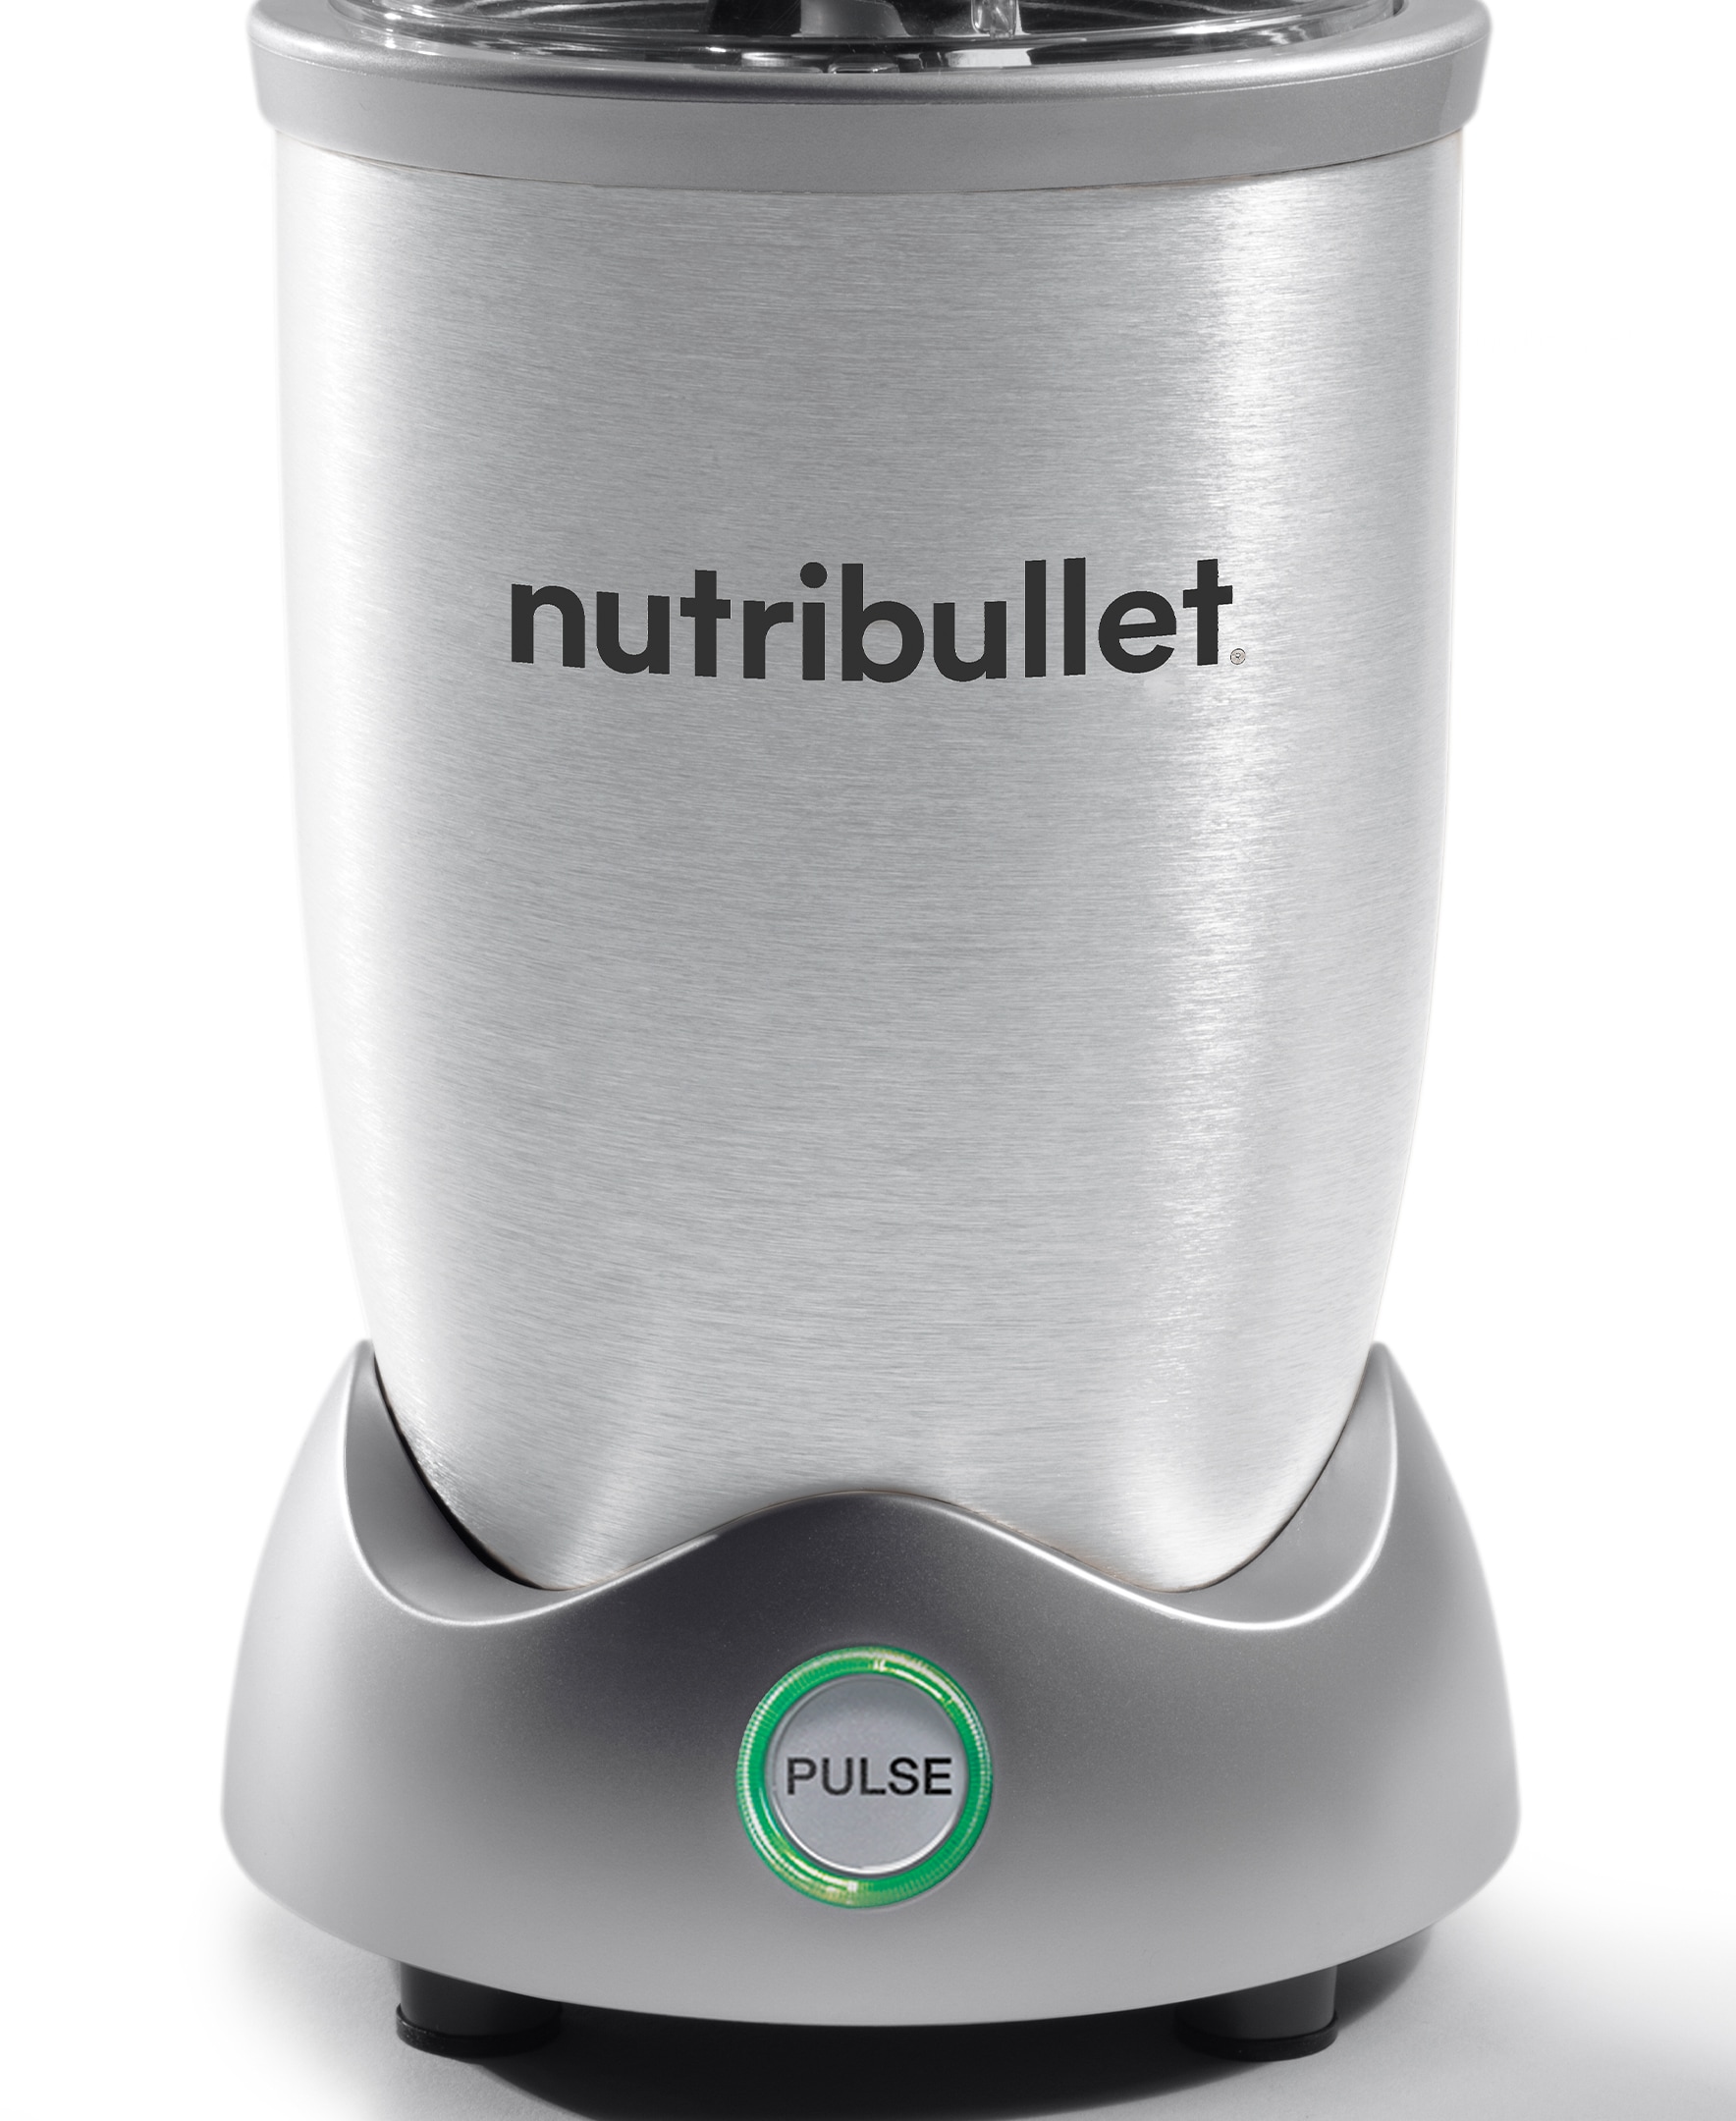  nutribullet Pro+ 1200 Watt Personal Blender with Pulse